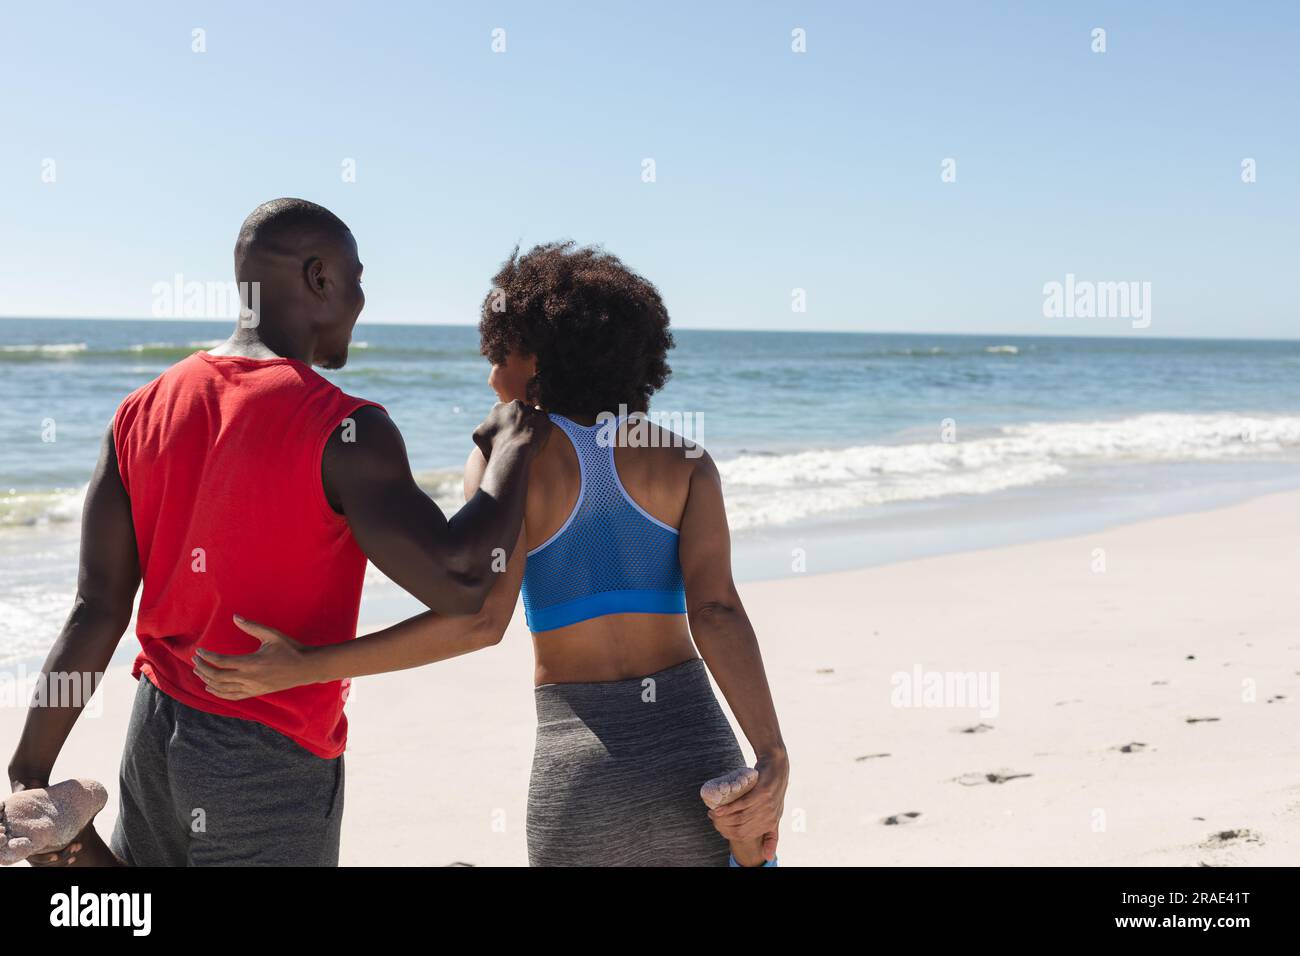 Coppia afro-americana felice e in forma che si esercita, si allunga e abbraccia sulla spiaggia soleggiata, spazio fotocopie Foto Stock